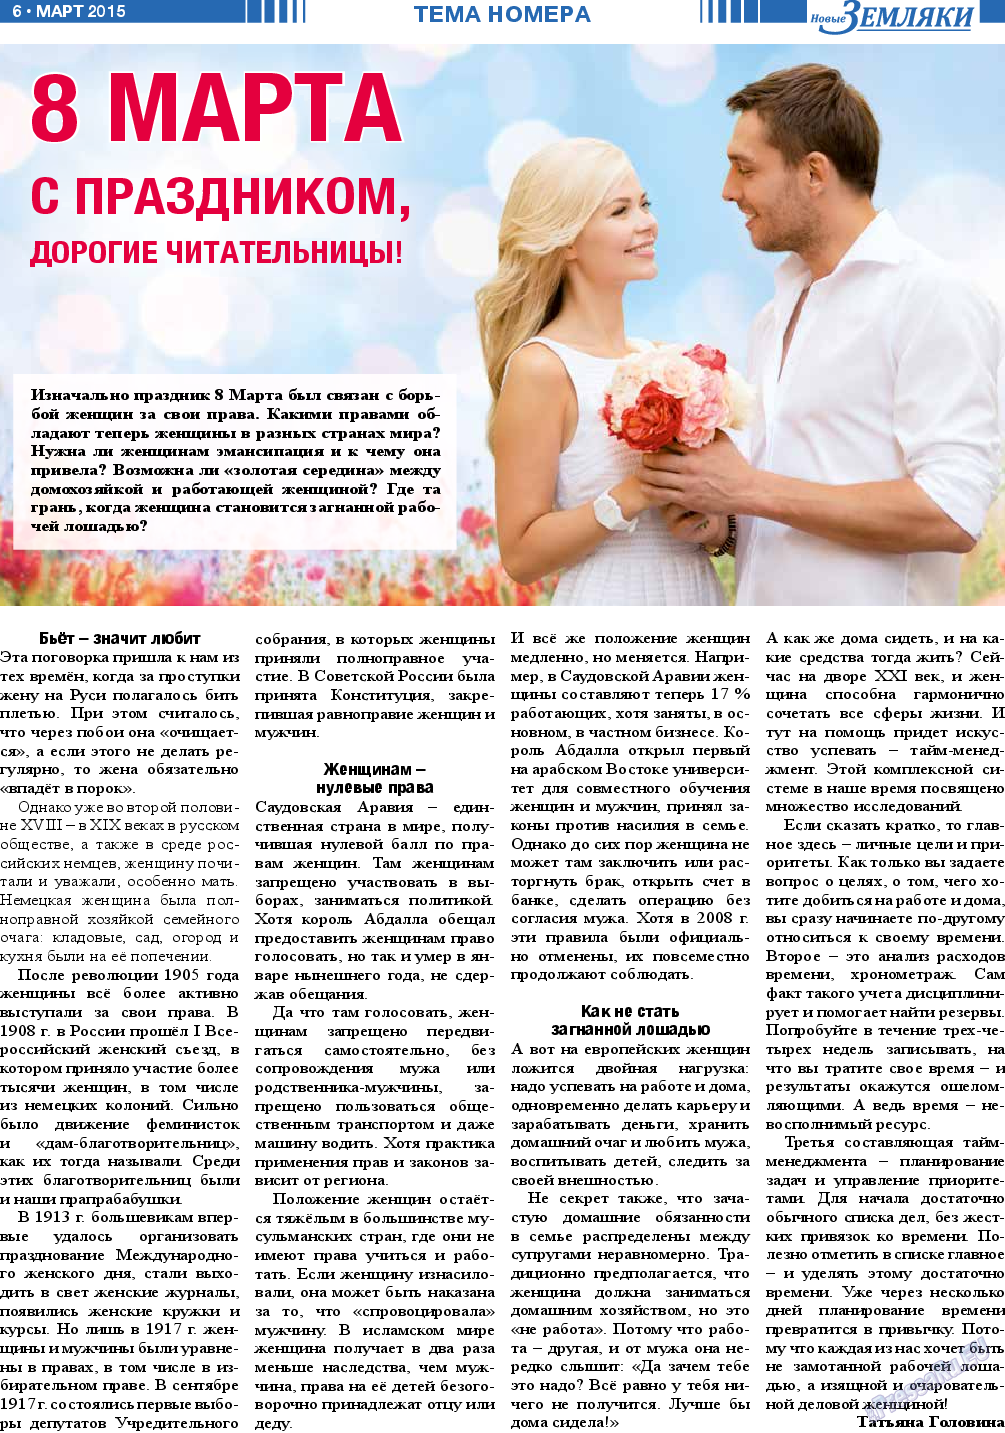 Новые Земляки, газета. 2015 №3 стр.6